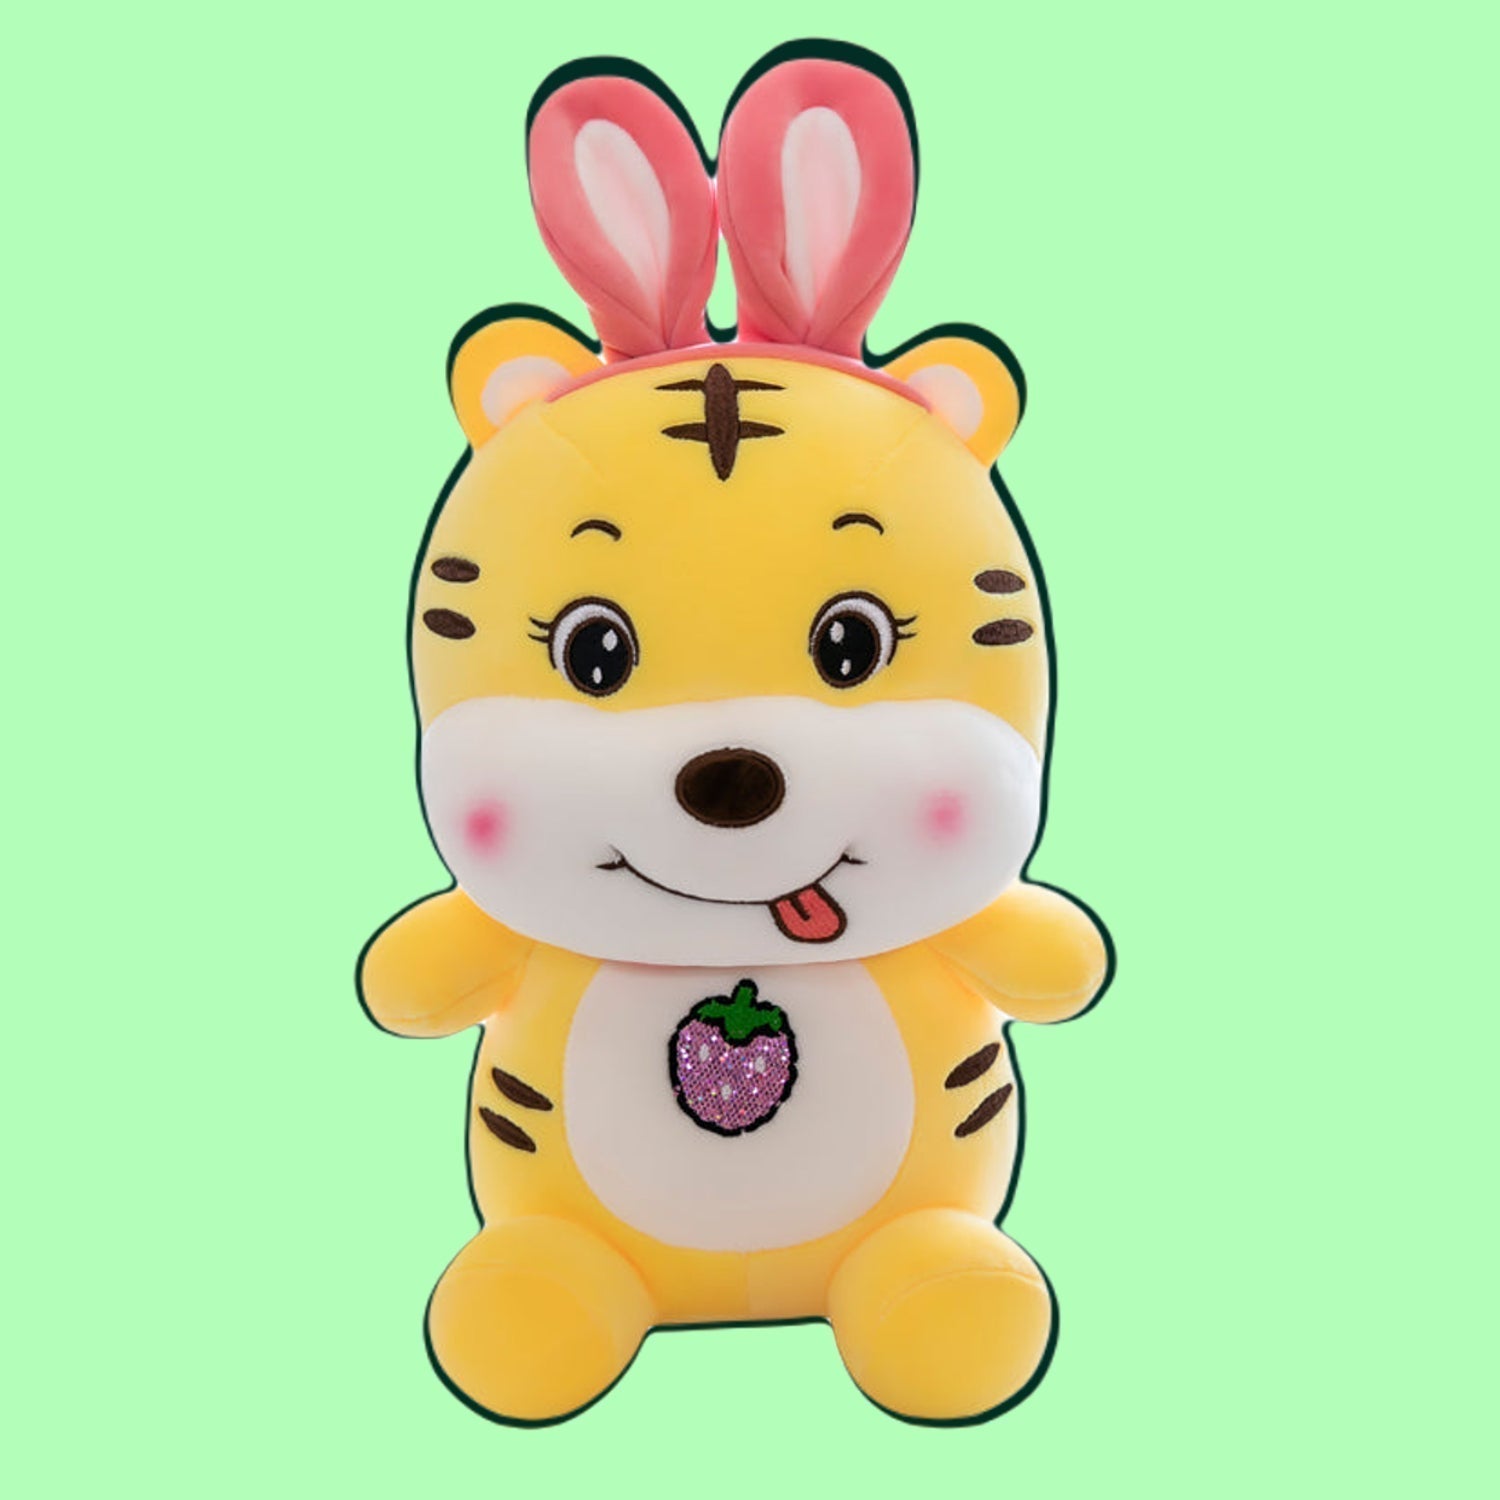 omgkawaii Stuffed Animals Adorable Sitting Tiger Plushie